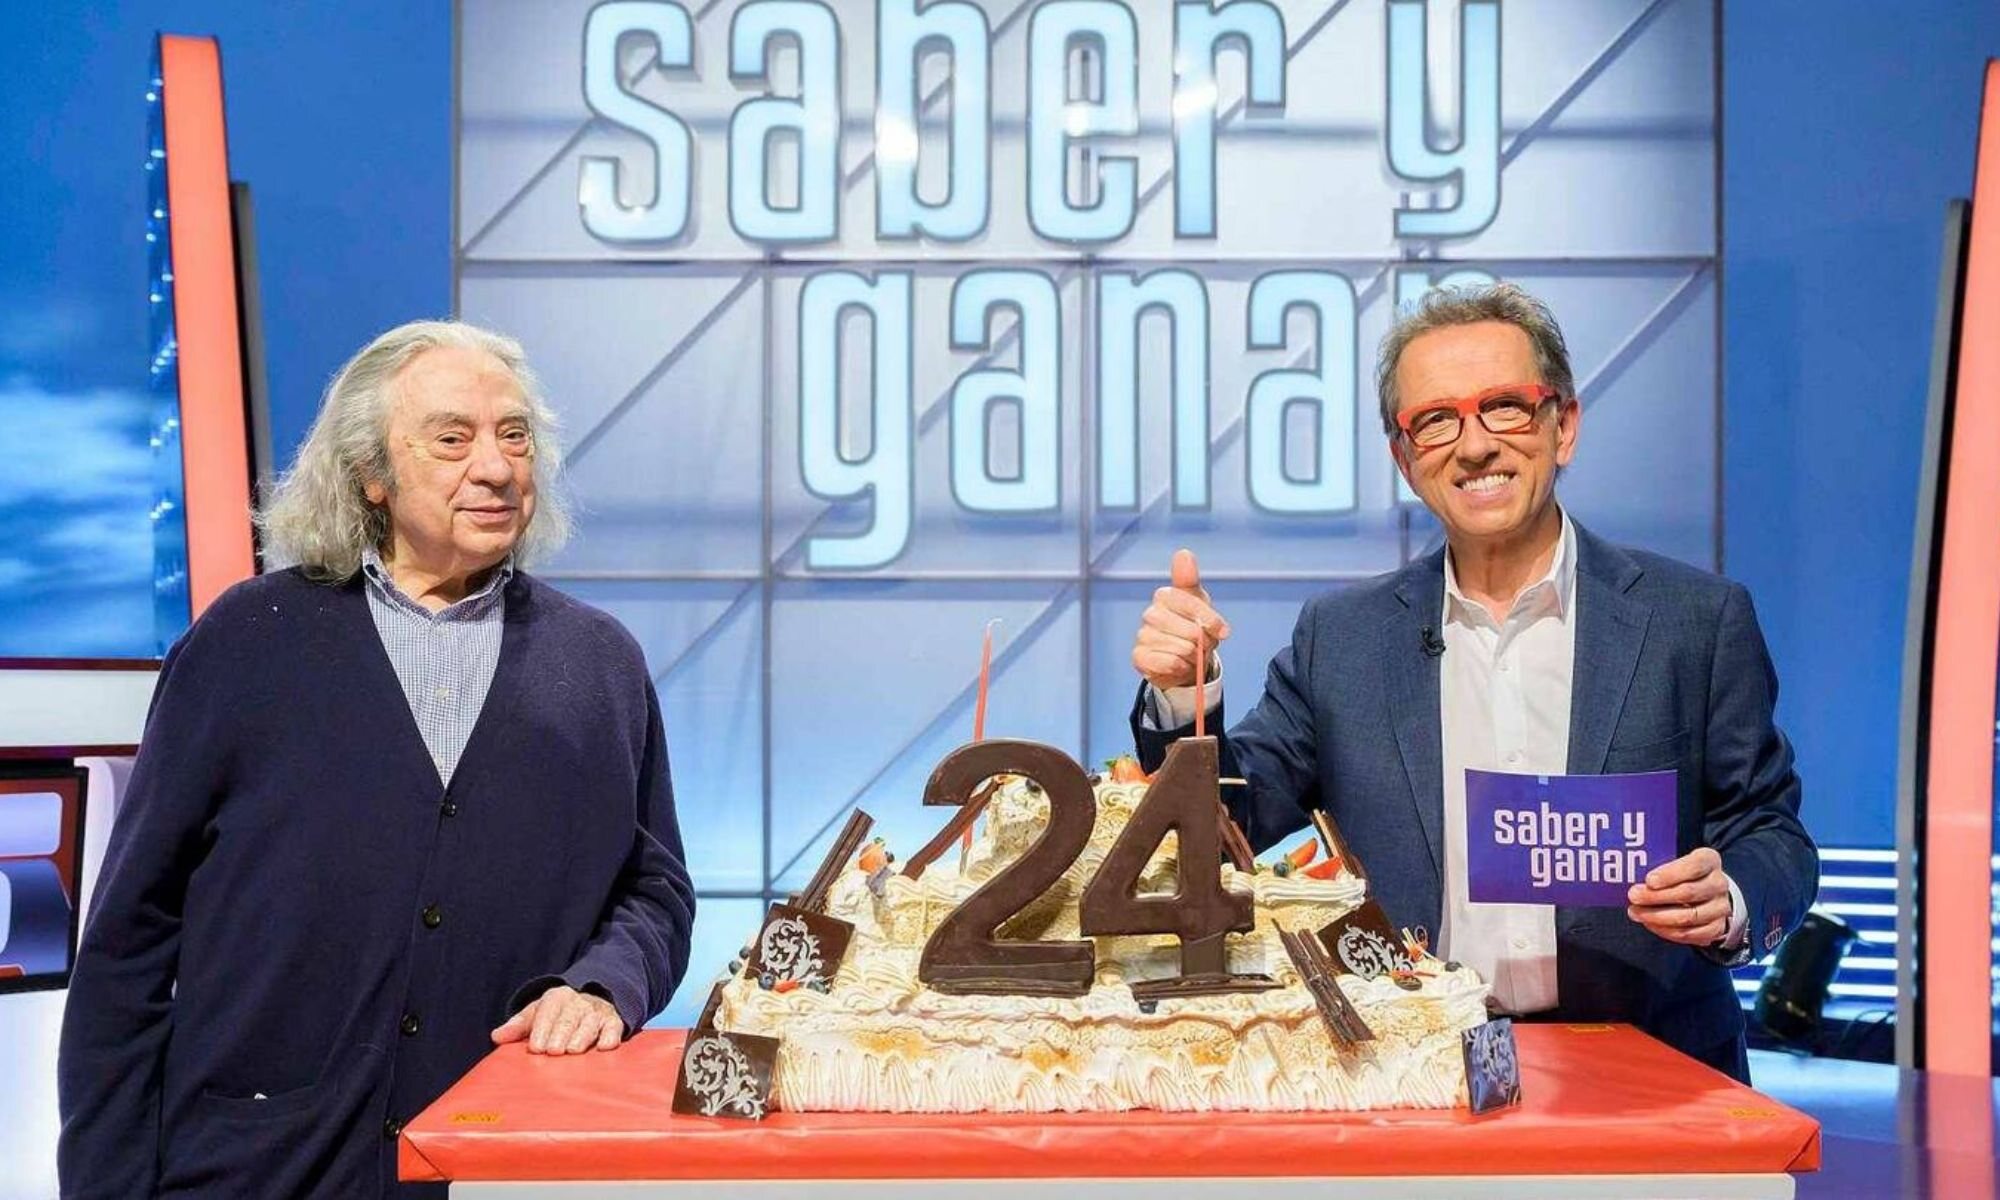 Jordi Hurtado y Sergi Schaff en 'Saber y Ganar'